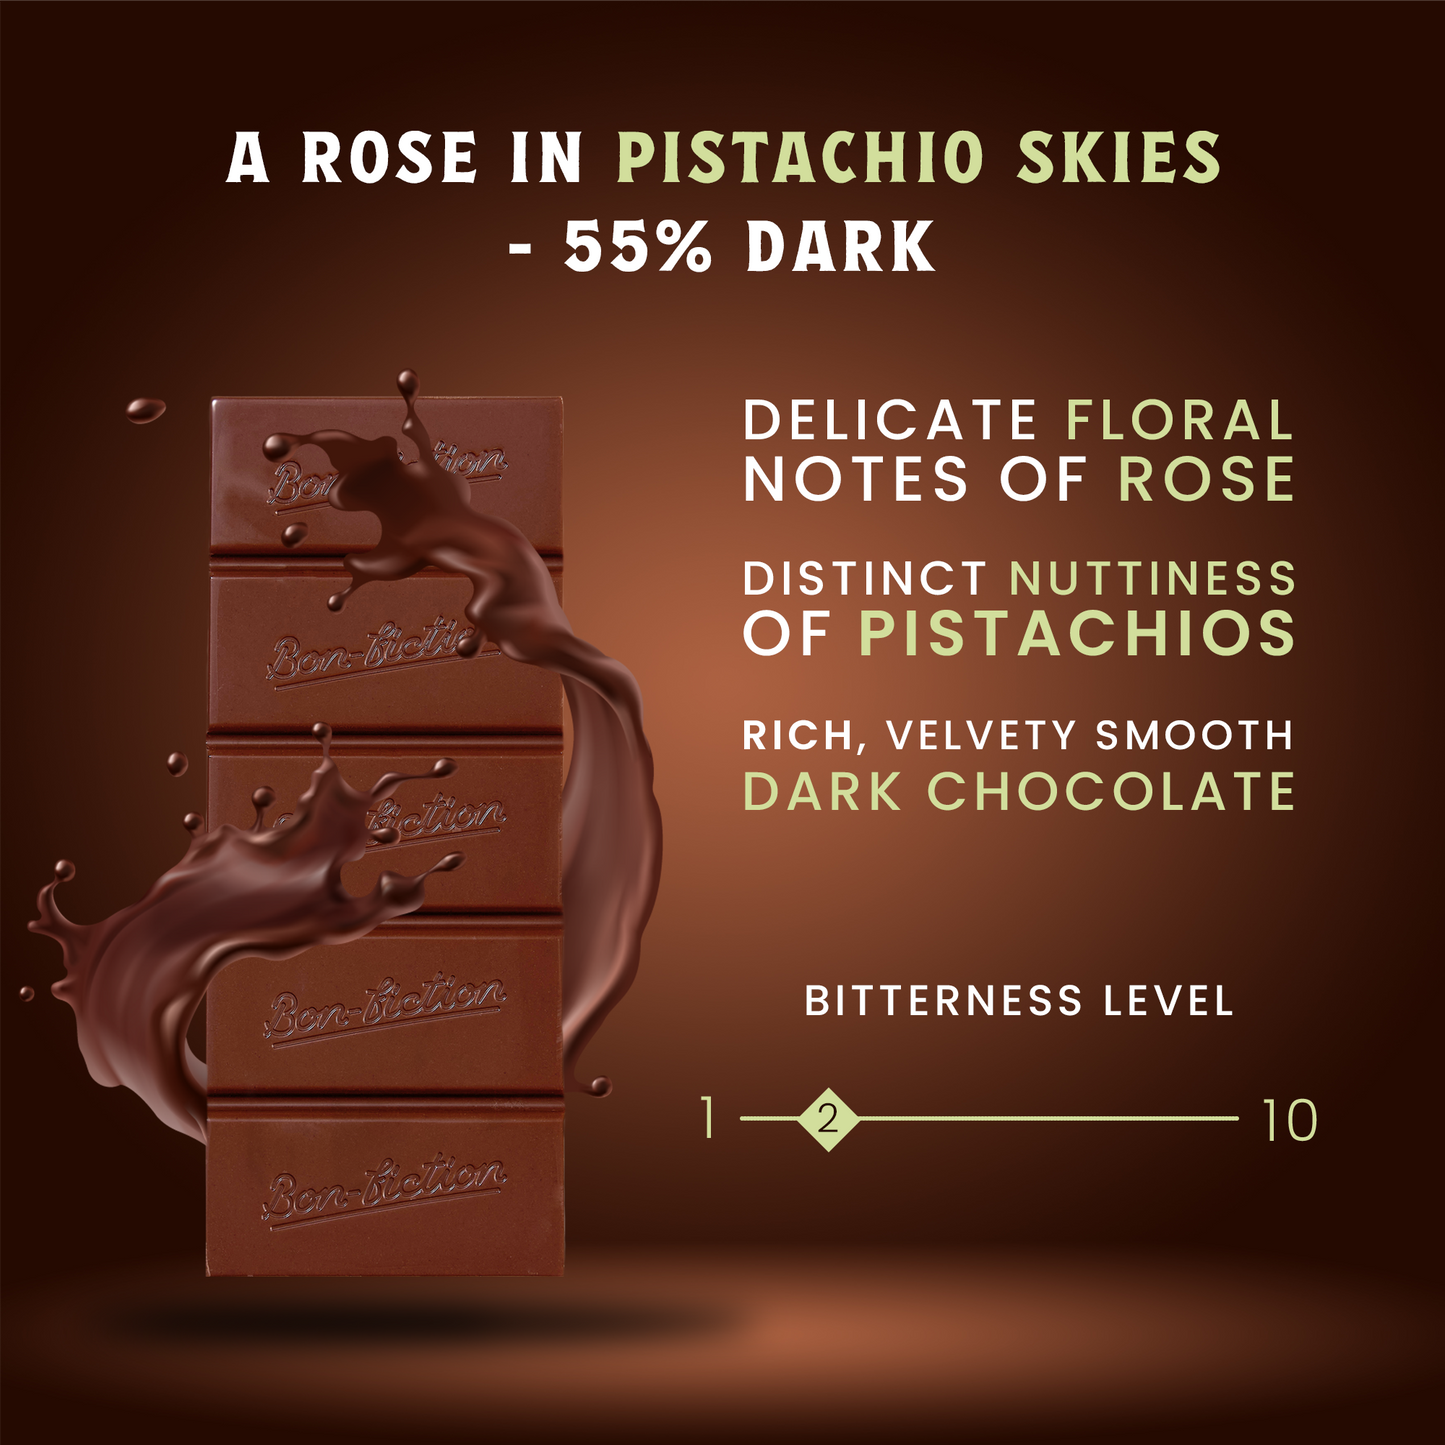 A Rose In Pistachio Skies - 55% Dark Rose Pistachio Chocolate